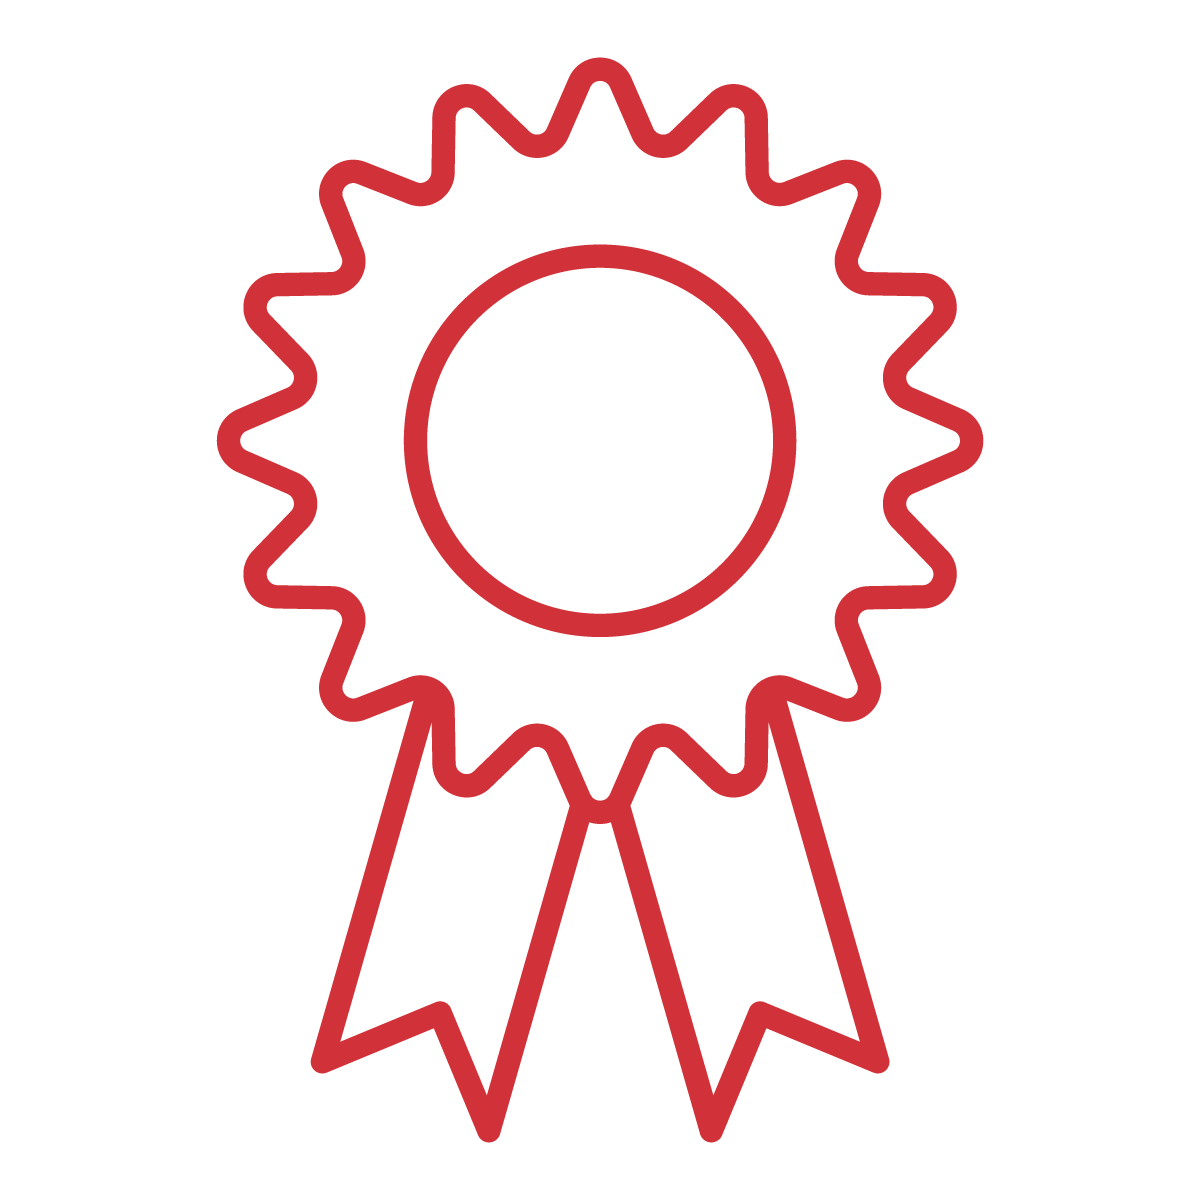 Graphic depicting an award ribbon